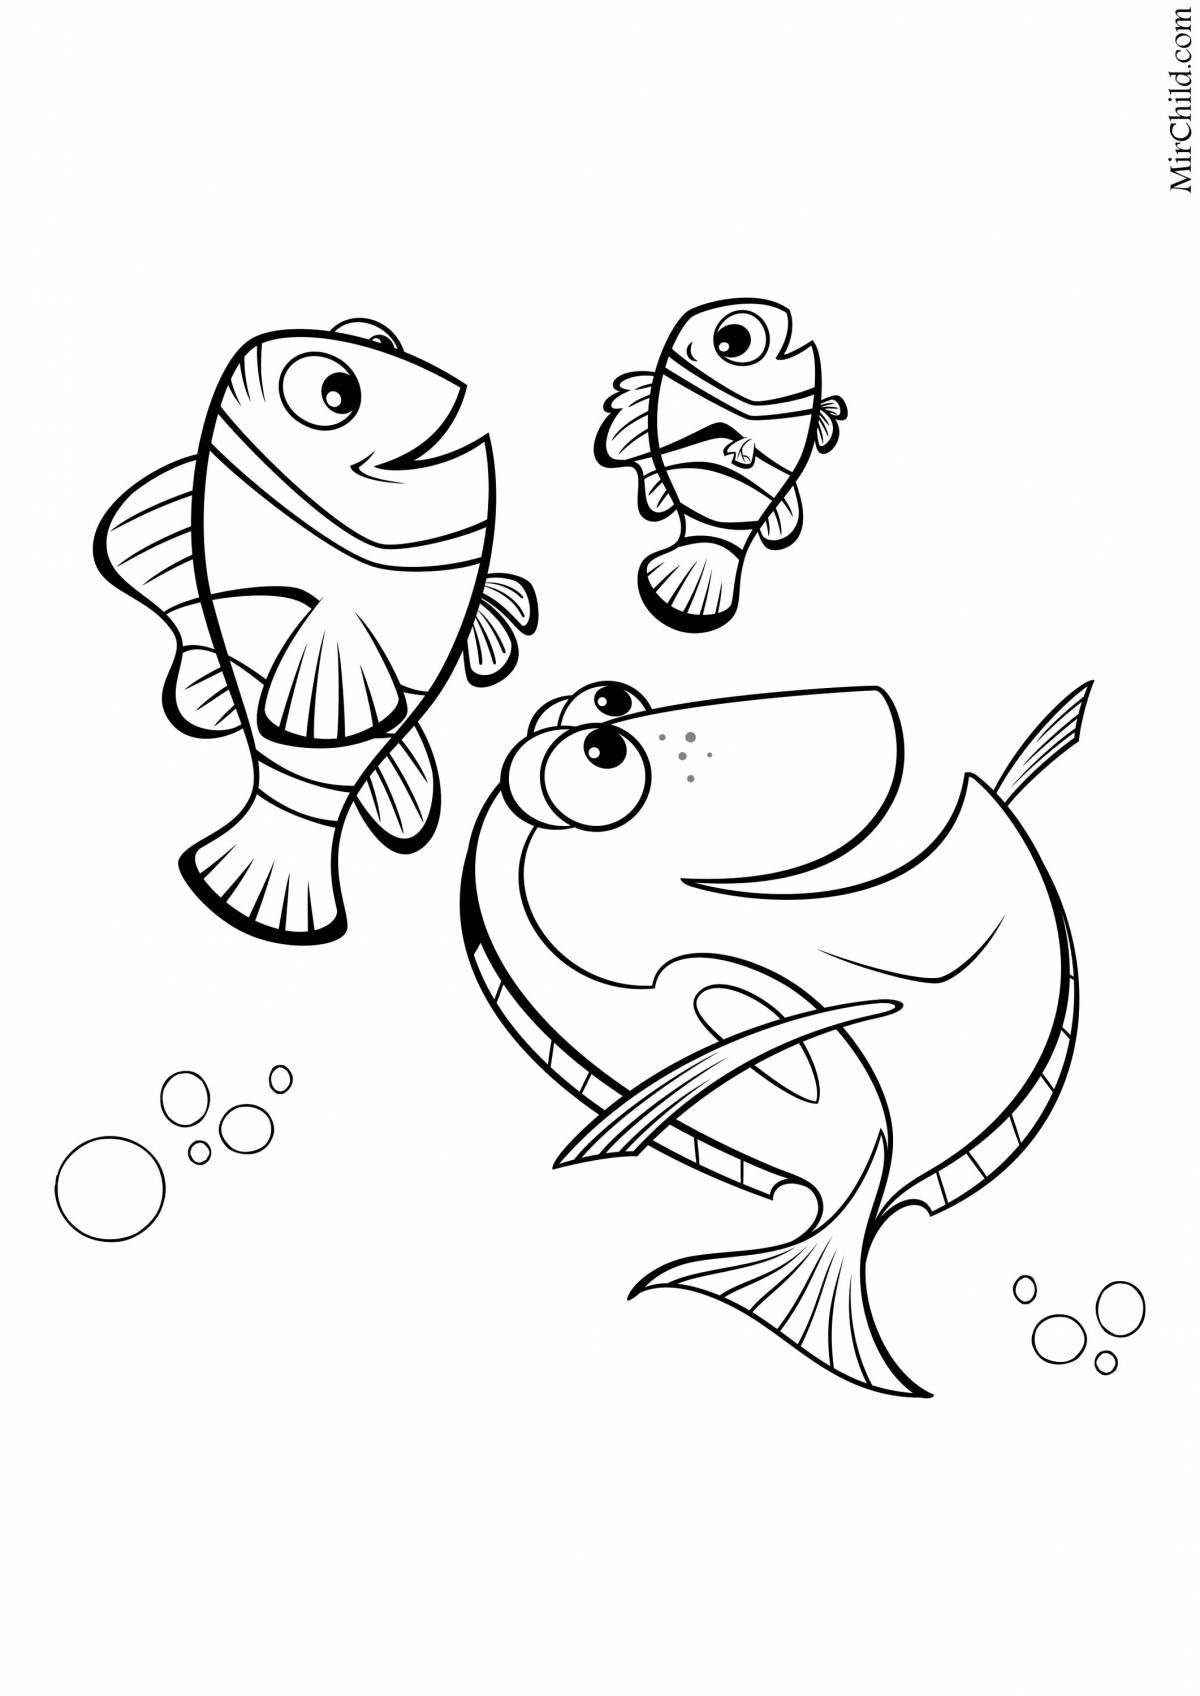 Nemo and dory #1